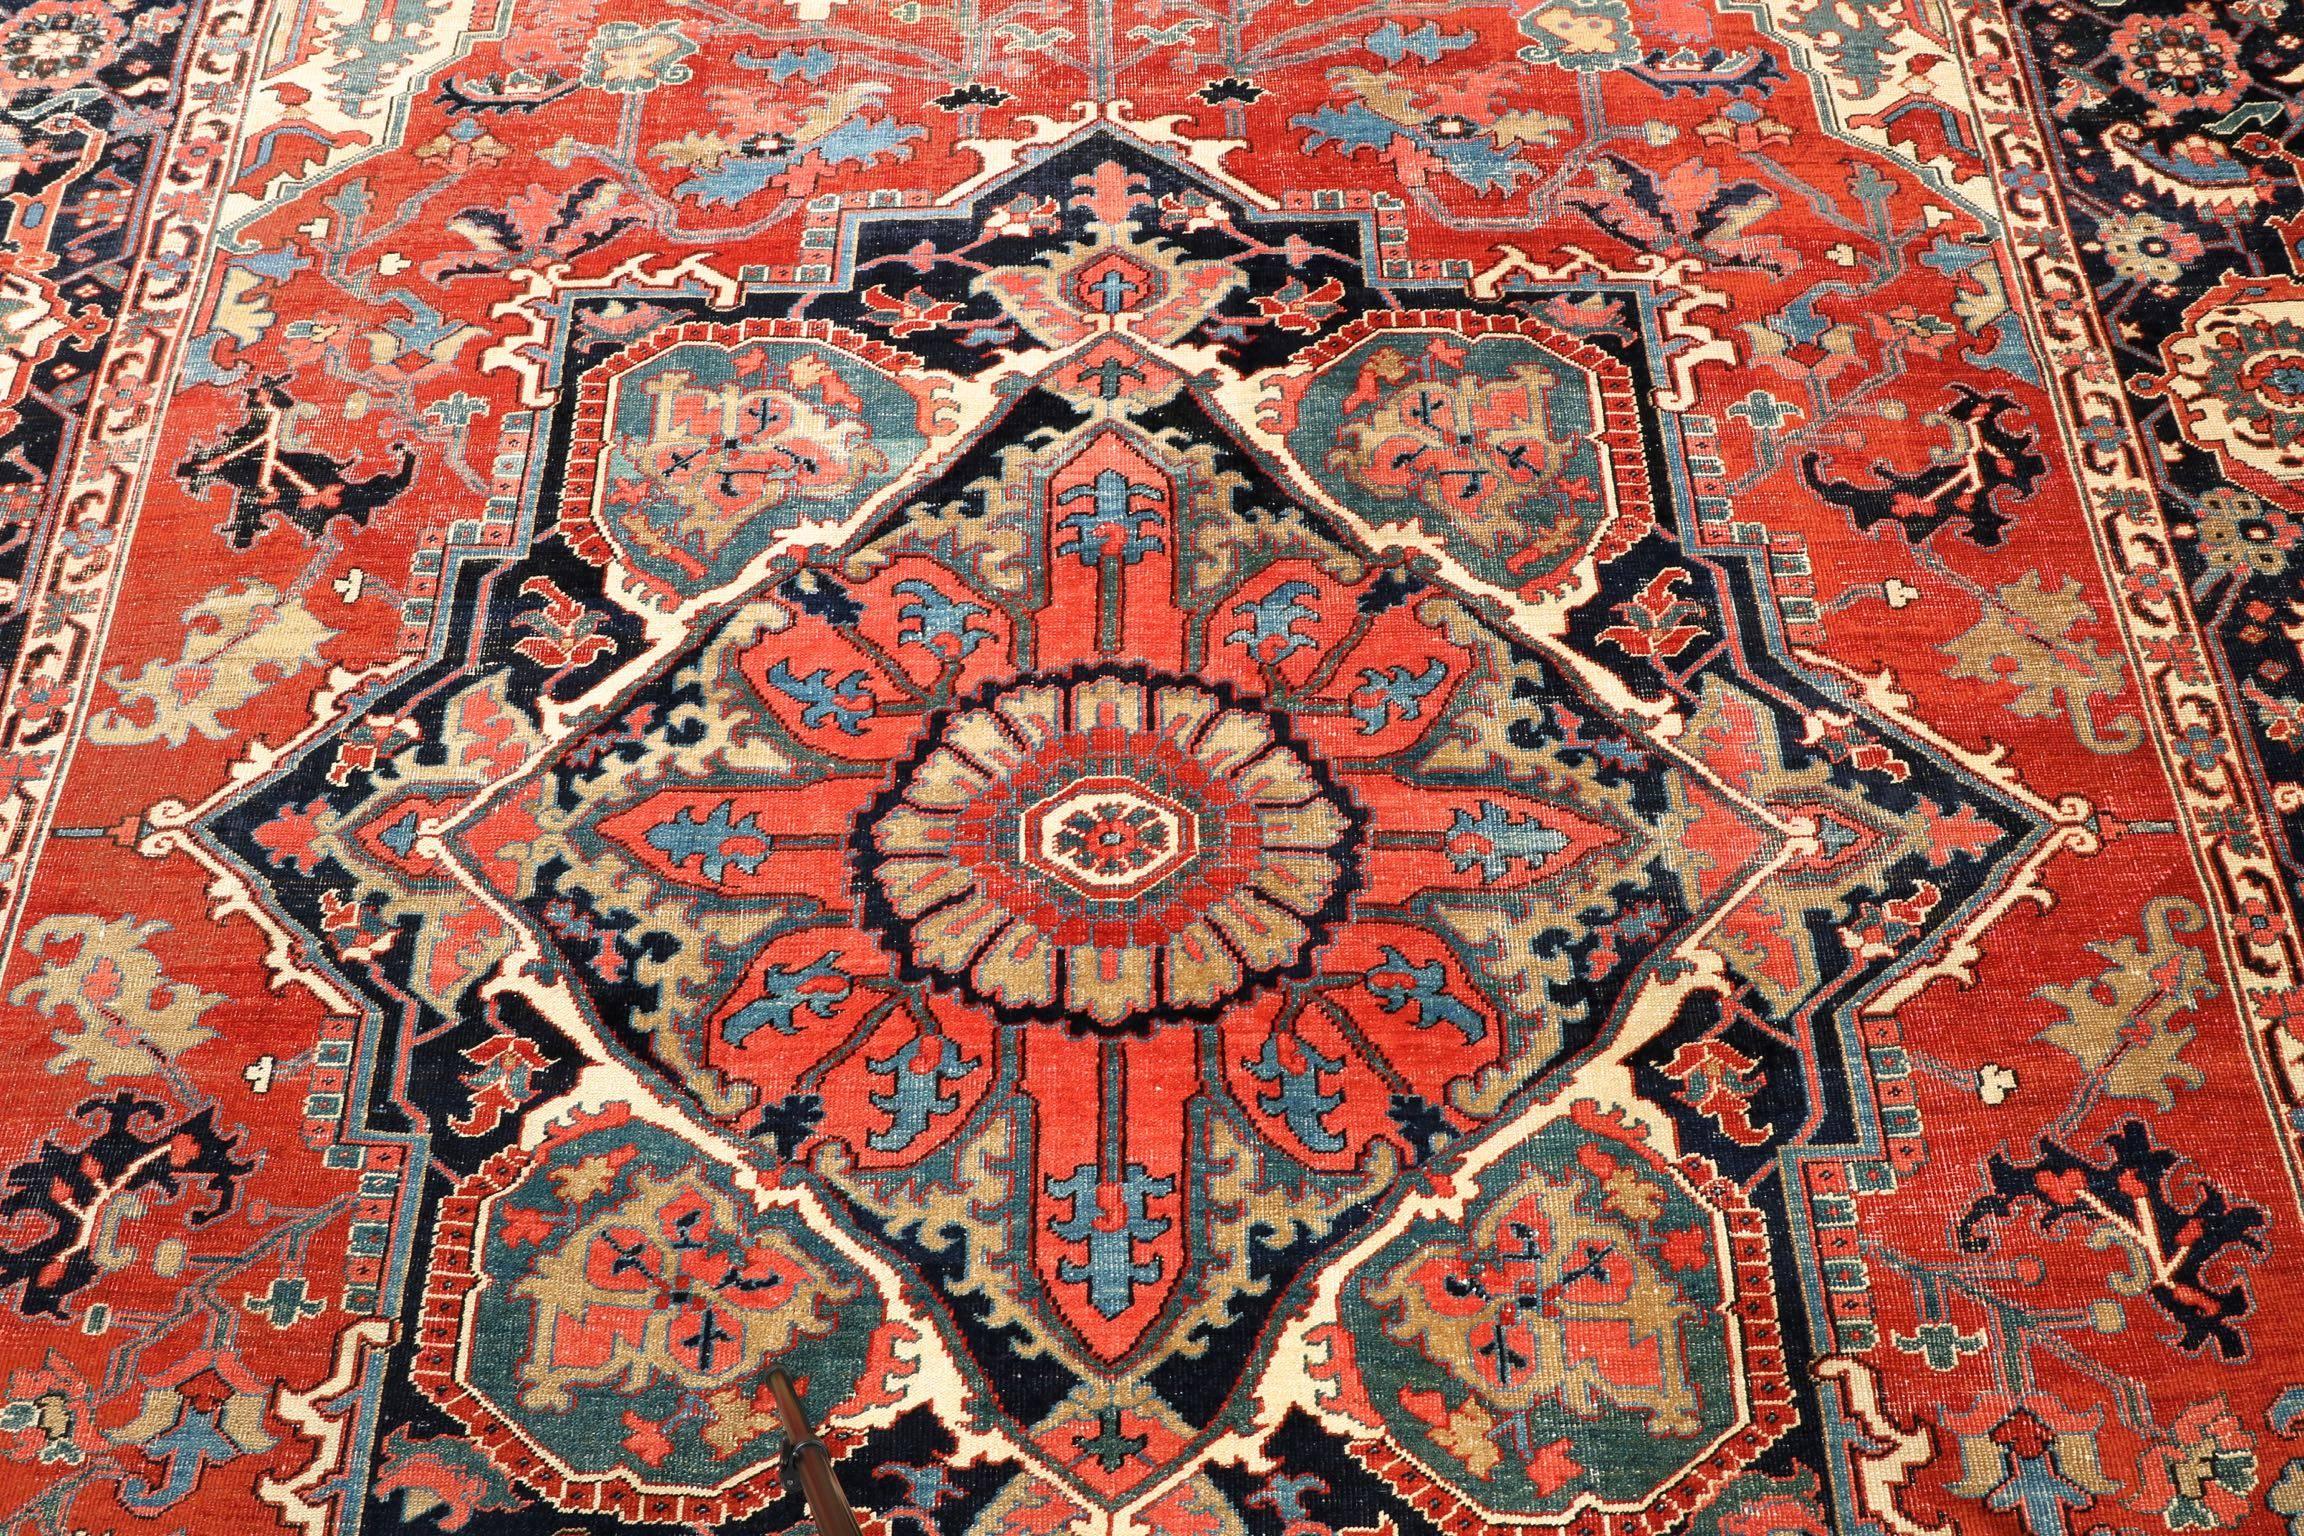 20th Century Fine Authentic Persian Antique Heriz Serapi Carpet Rug, circa 1910